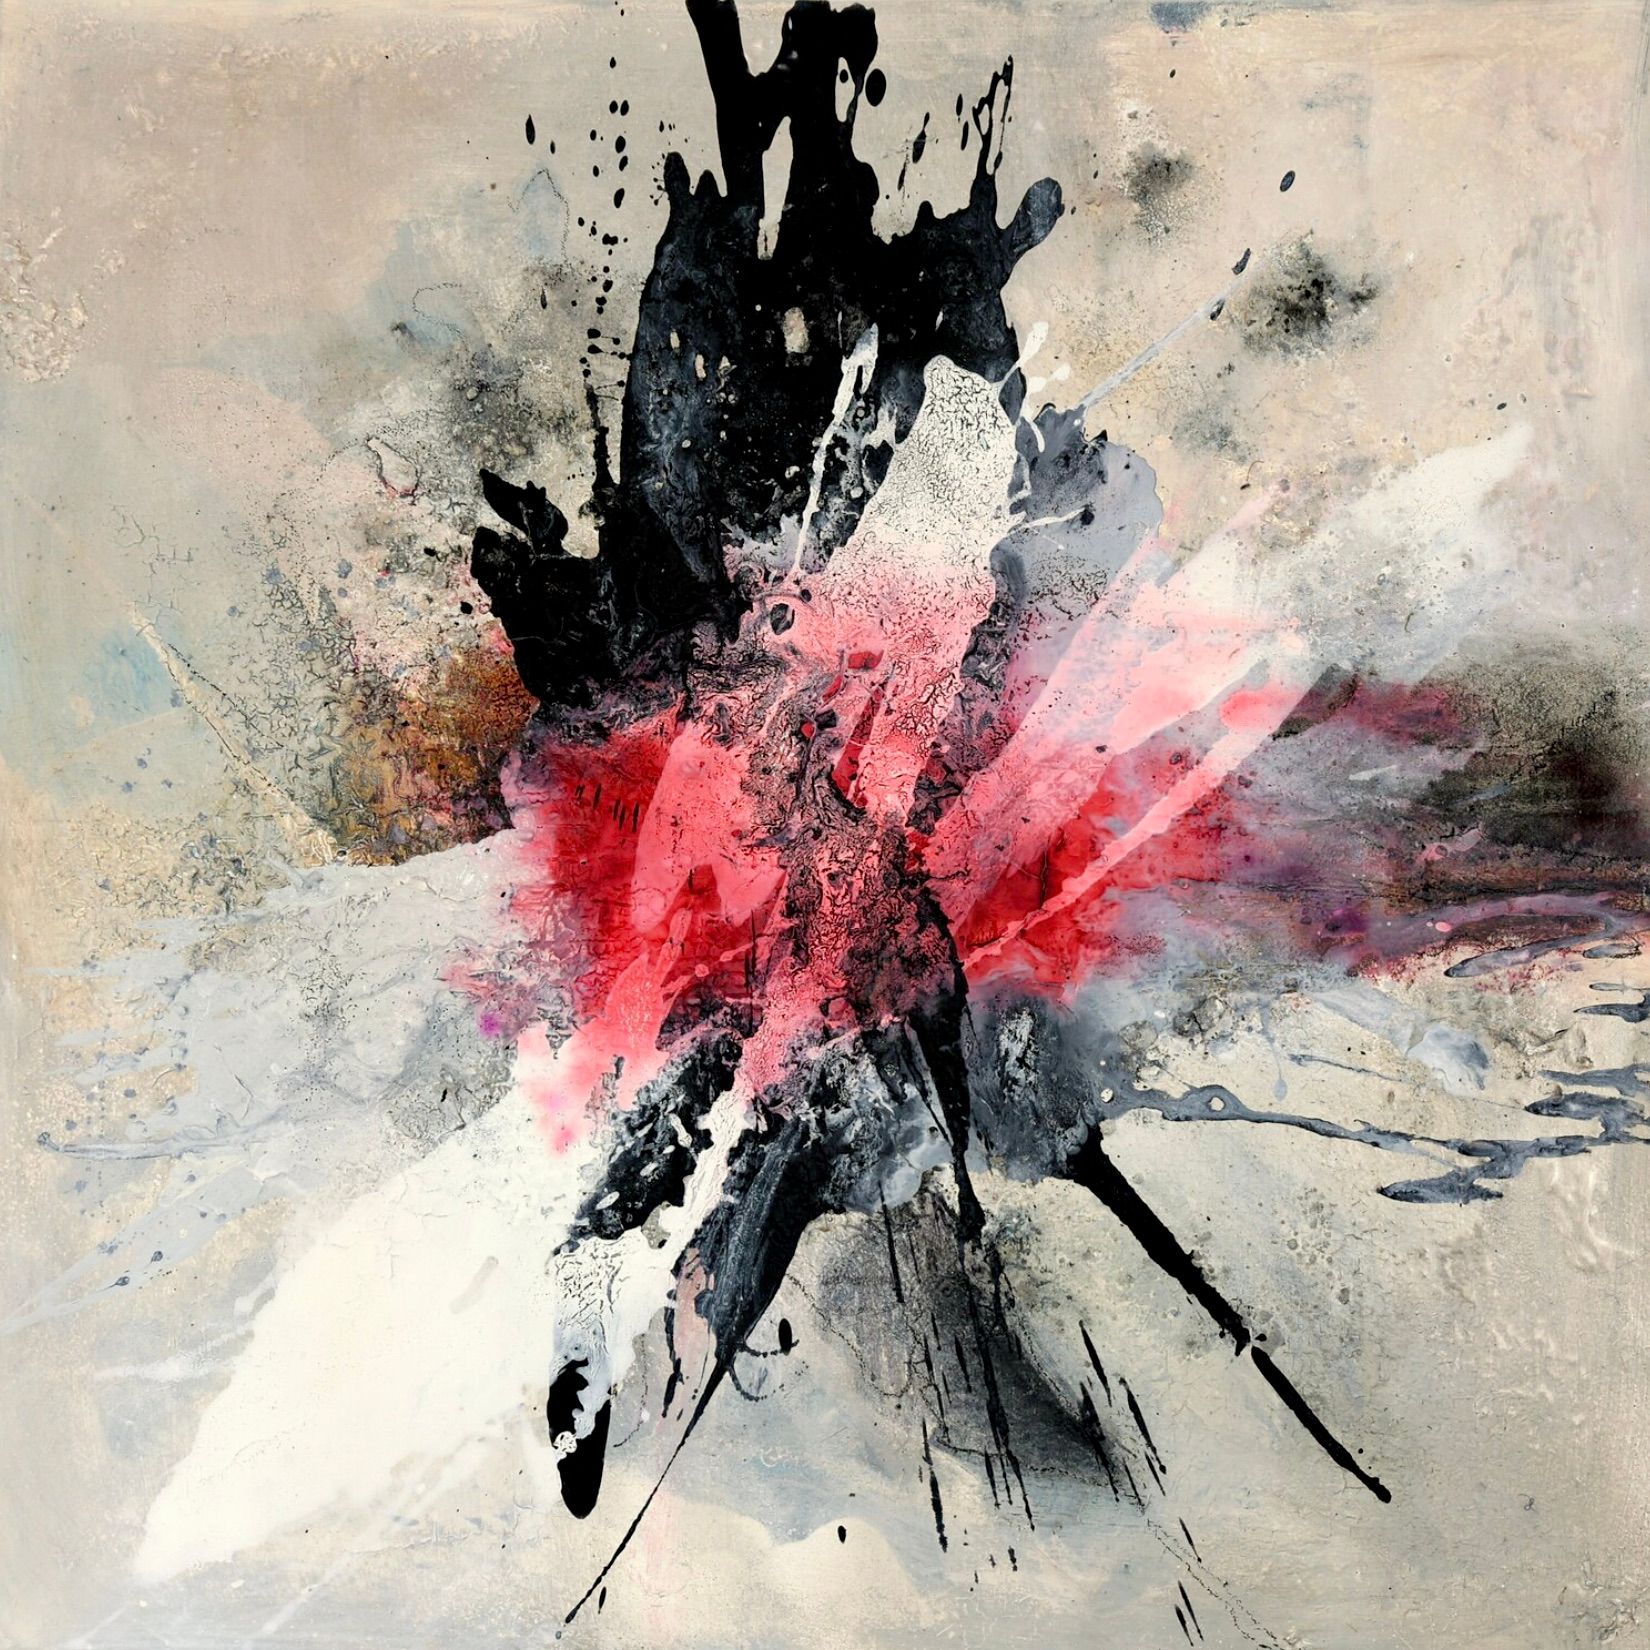 Dans la peinture "Explosively 1" de Christa Haack, expressionniste, abstraite et colorée, les couleurs qui semblent exploser sont le rouge, le ping, le noir et le blanc sur un fond gris-rosé.